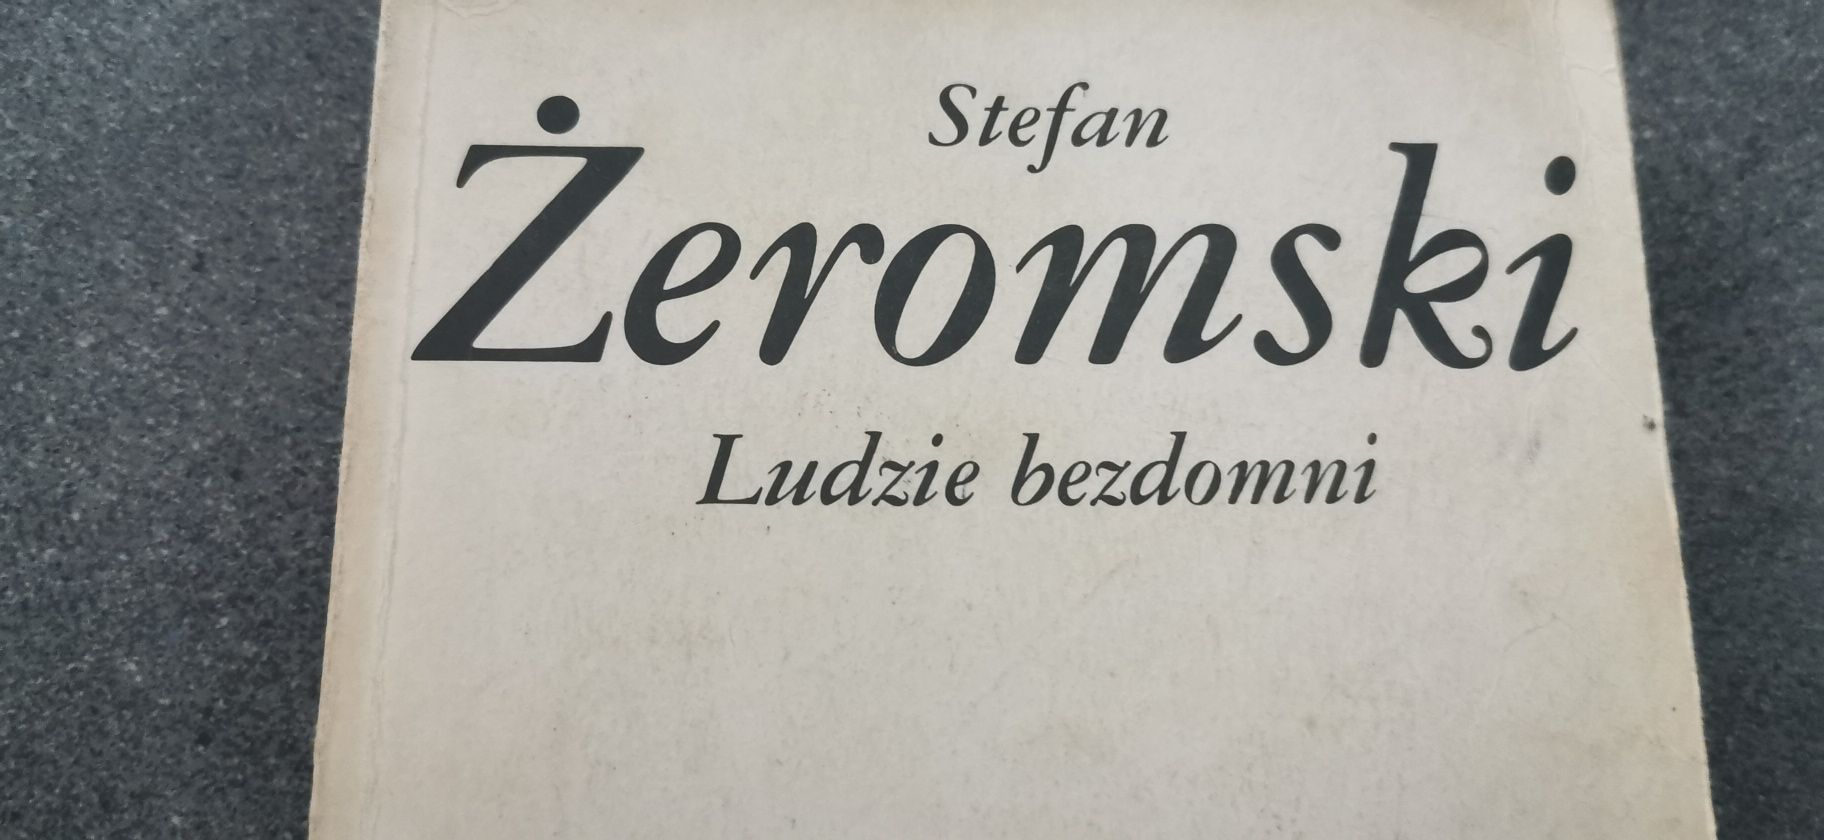 Stefan Żeromski Ludzie bezdomni.